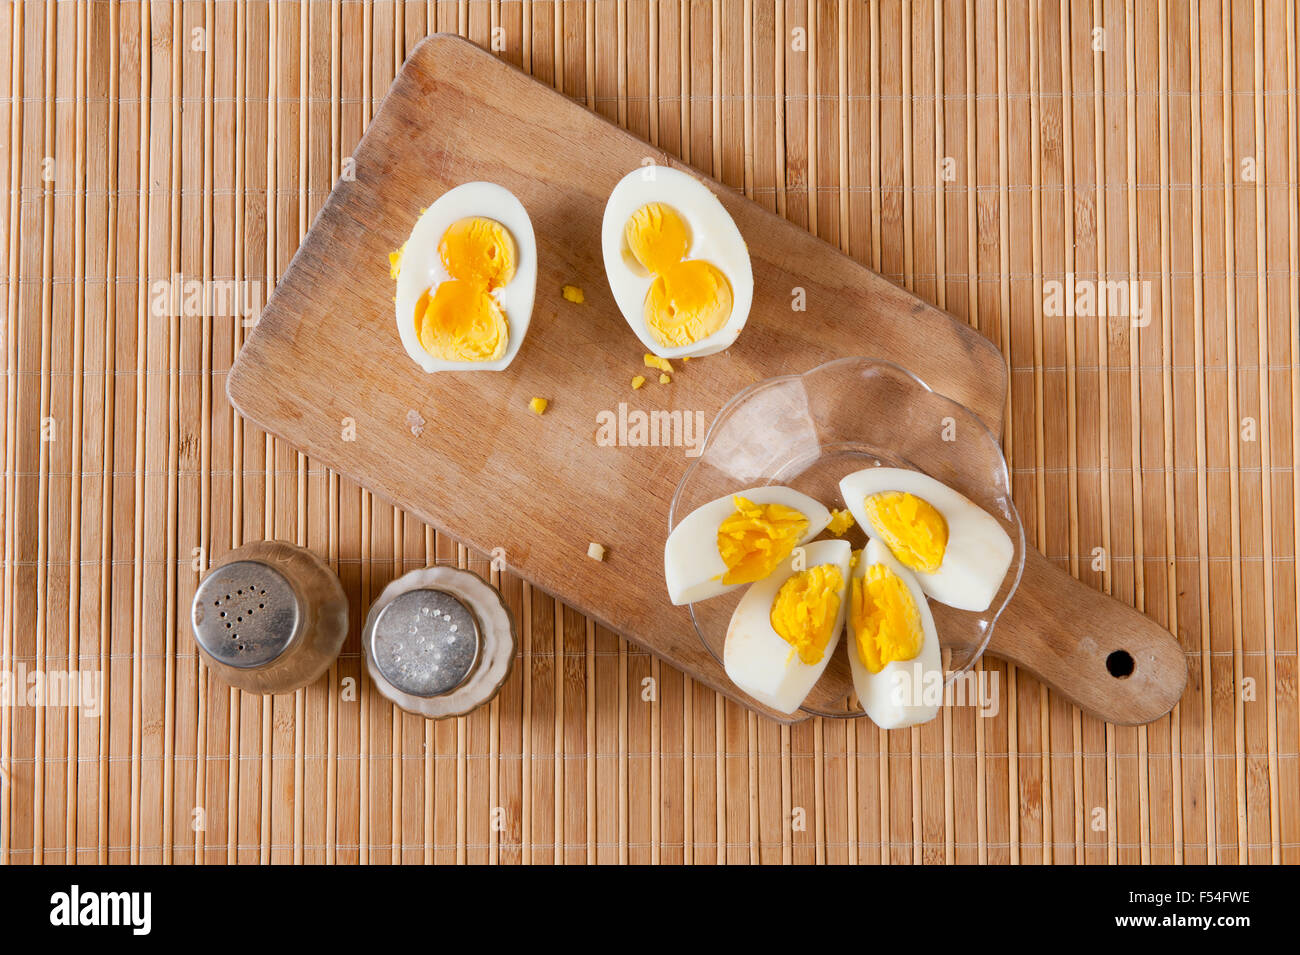 Taglia l'uovo sodo immagine stock. Immagine di cuoco - 27061637